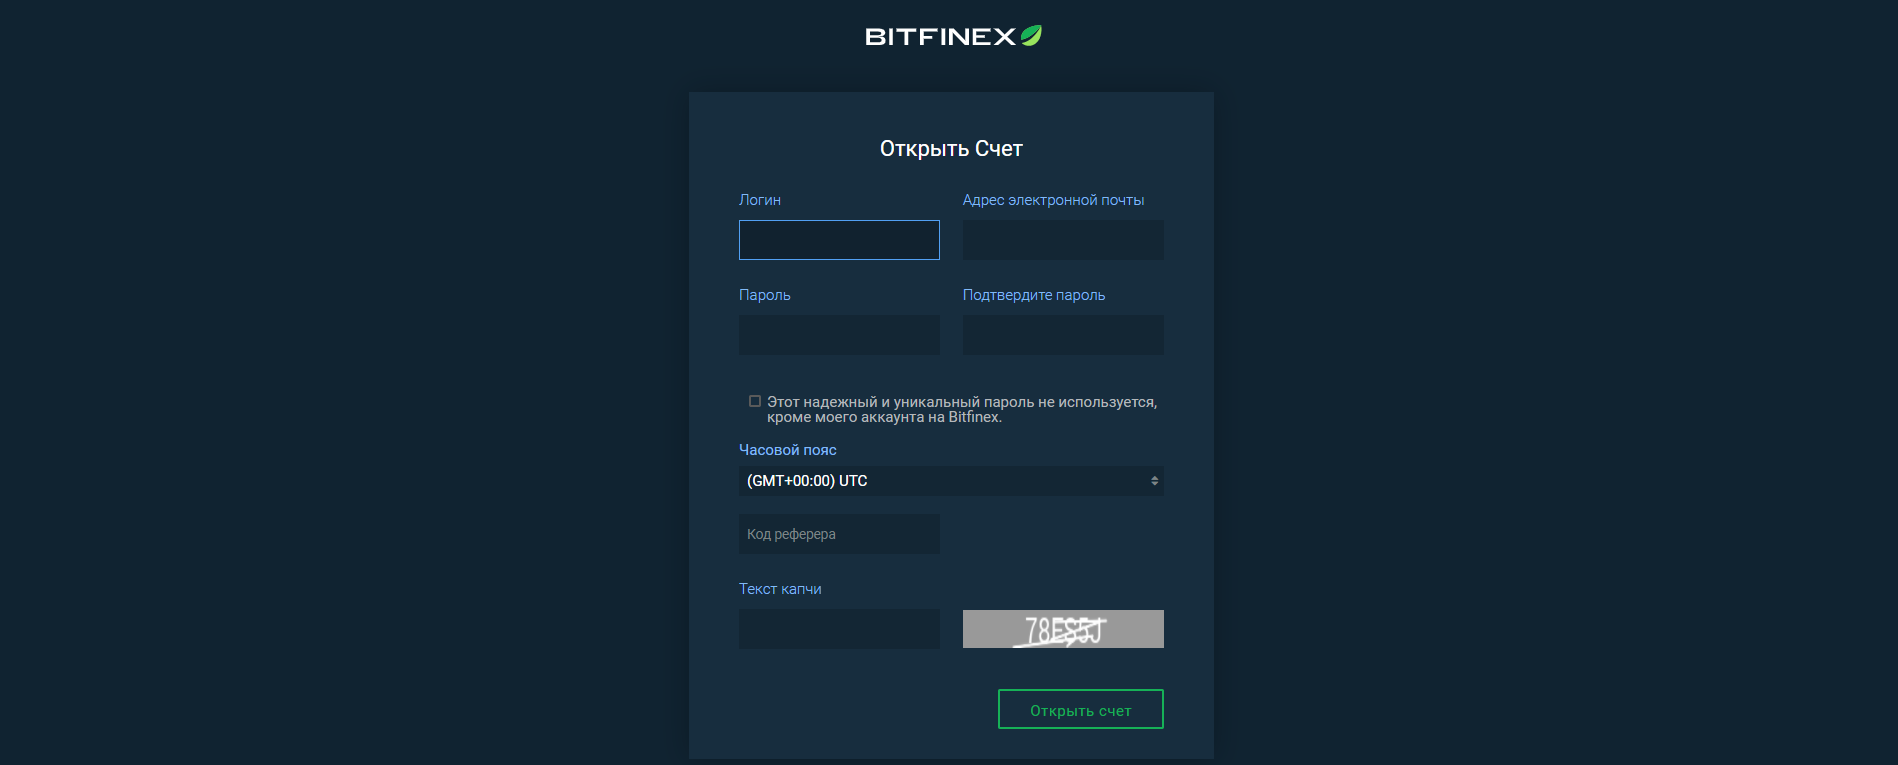 BitFinex.com